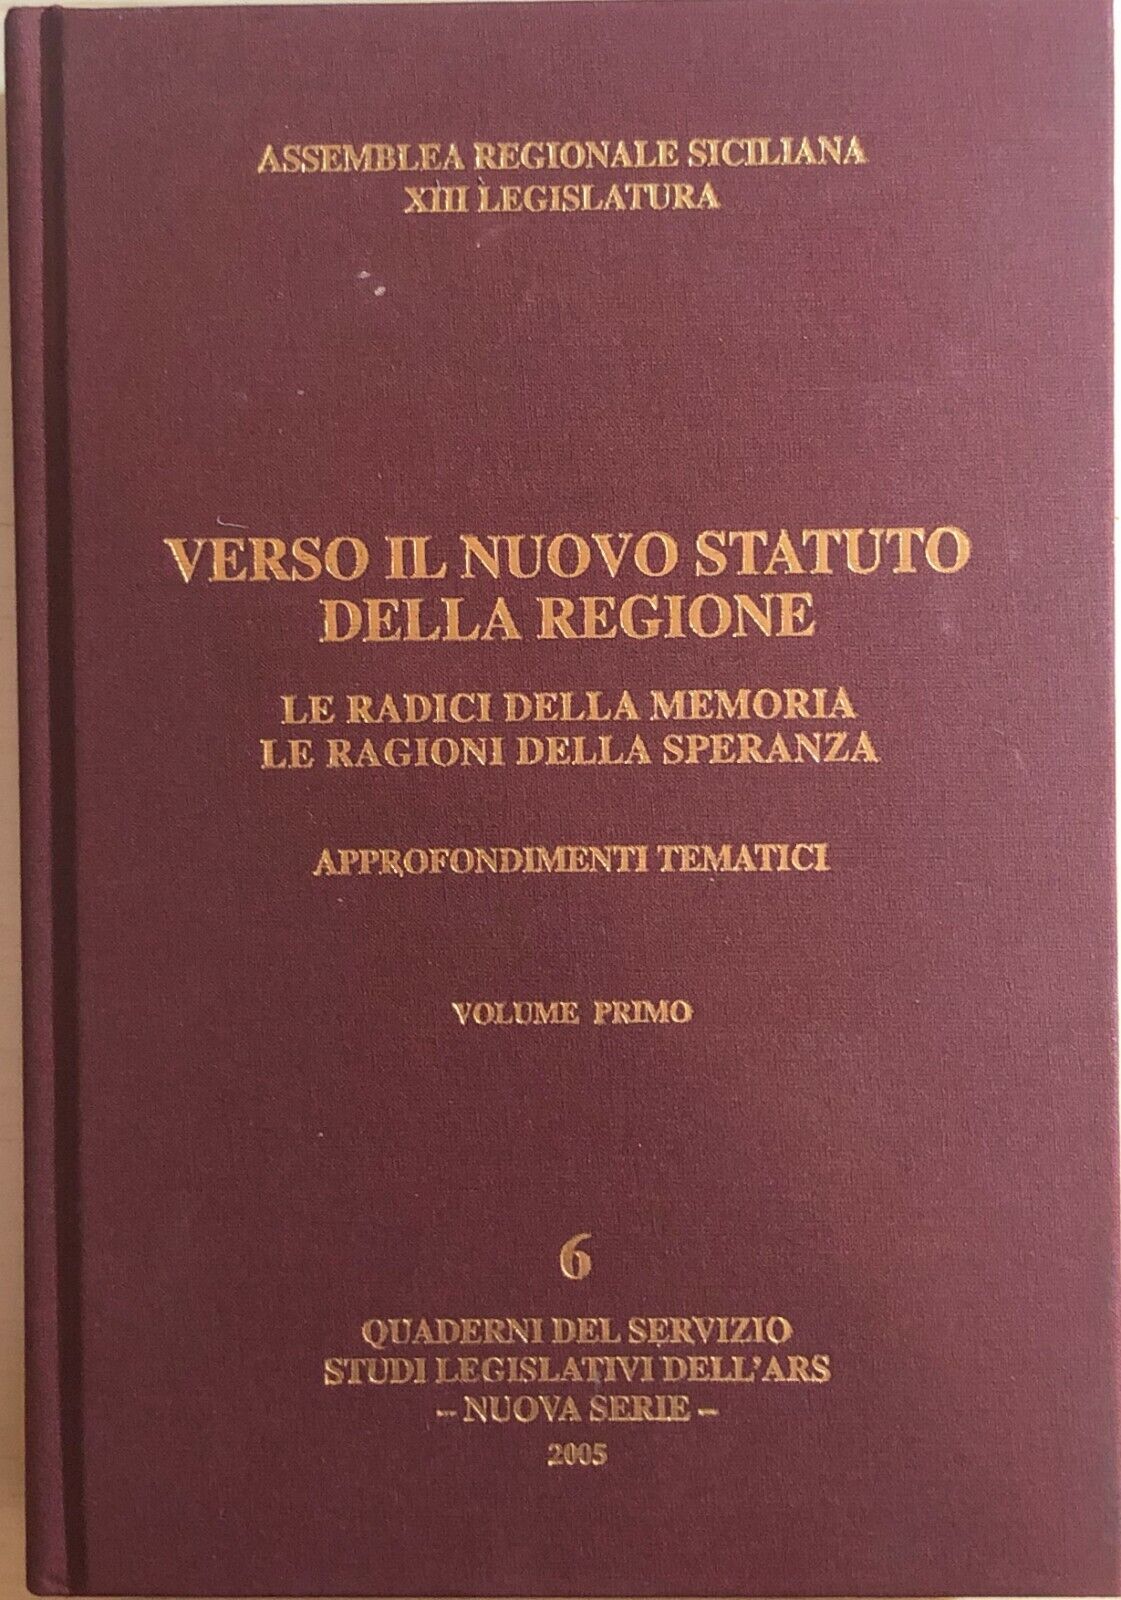 Verso il nuovo statuto della Regione 1 di Assemblea Regionale Siciliana XIII Leg